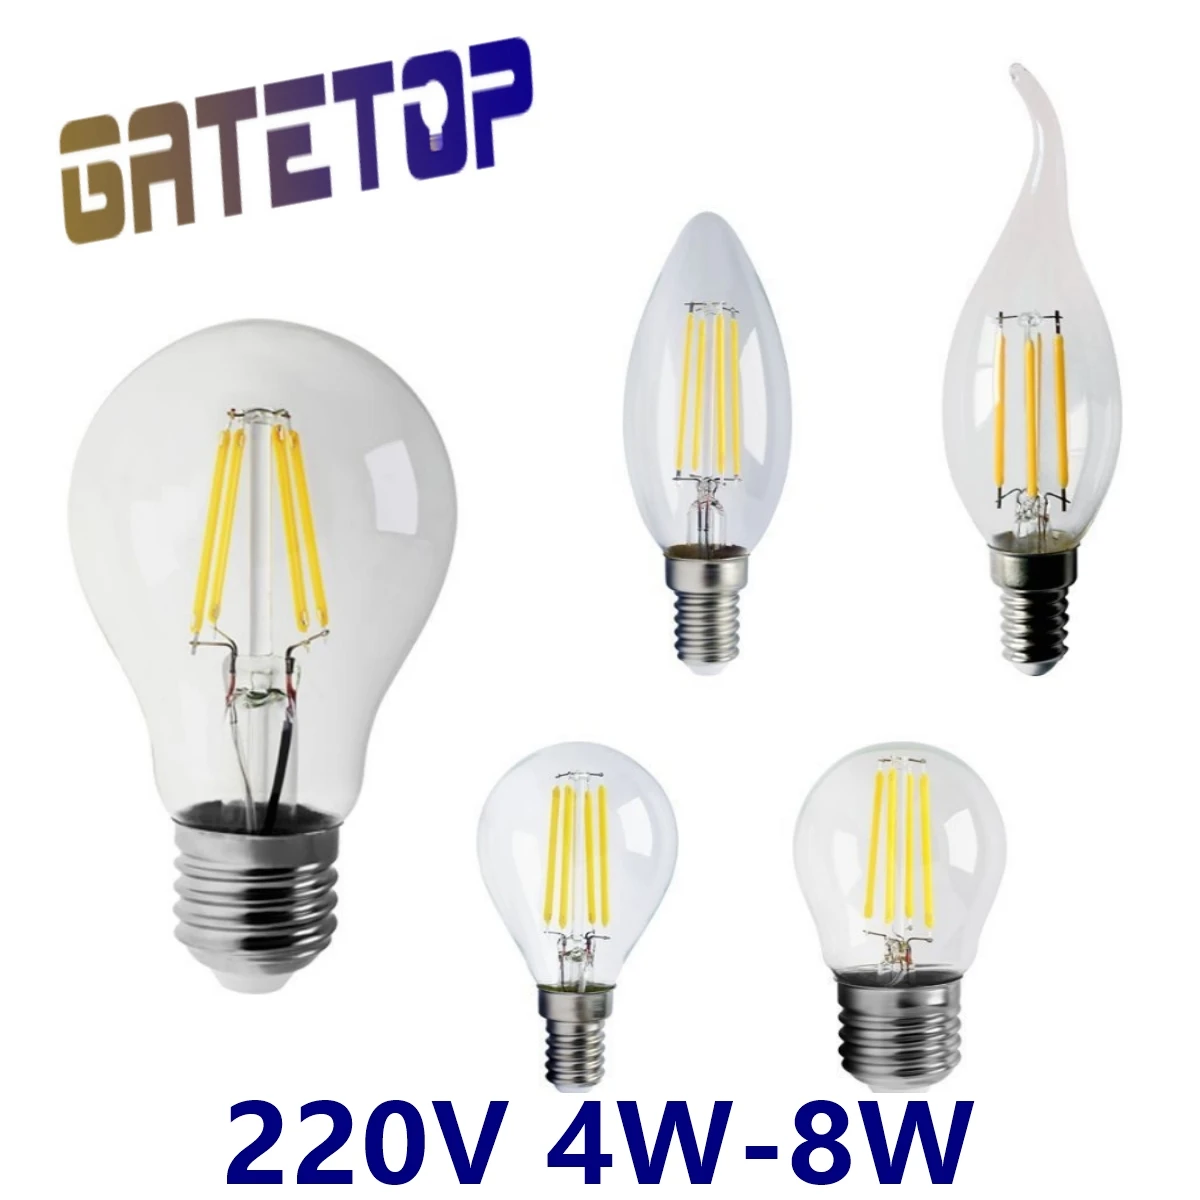 

E14 LED Candle Bulb C35 4W 6W 8W Natural White, E27 LED Filament Light Bulb ST64 A60 220V 4000K LED Edison Lamp